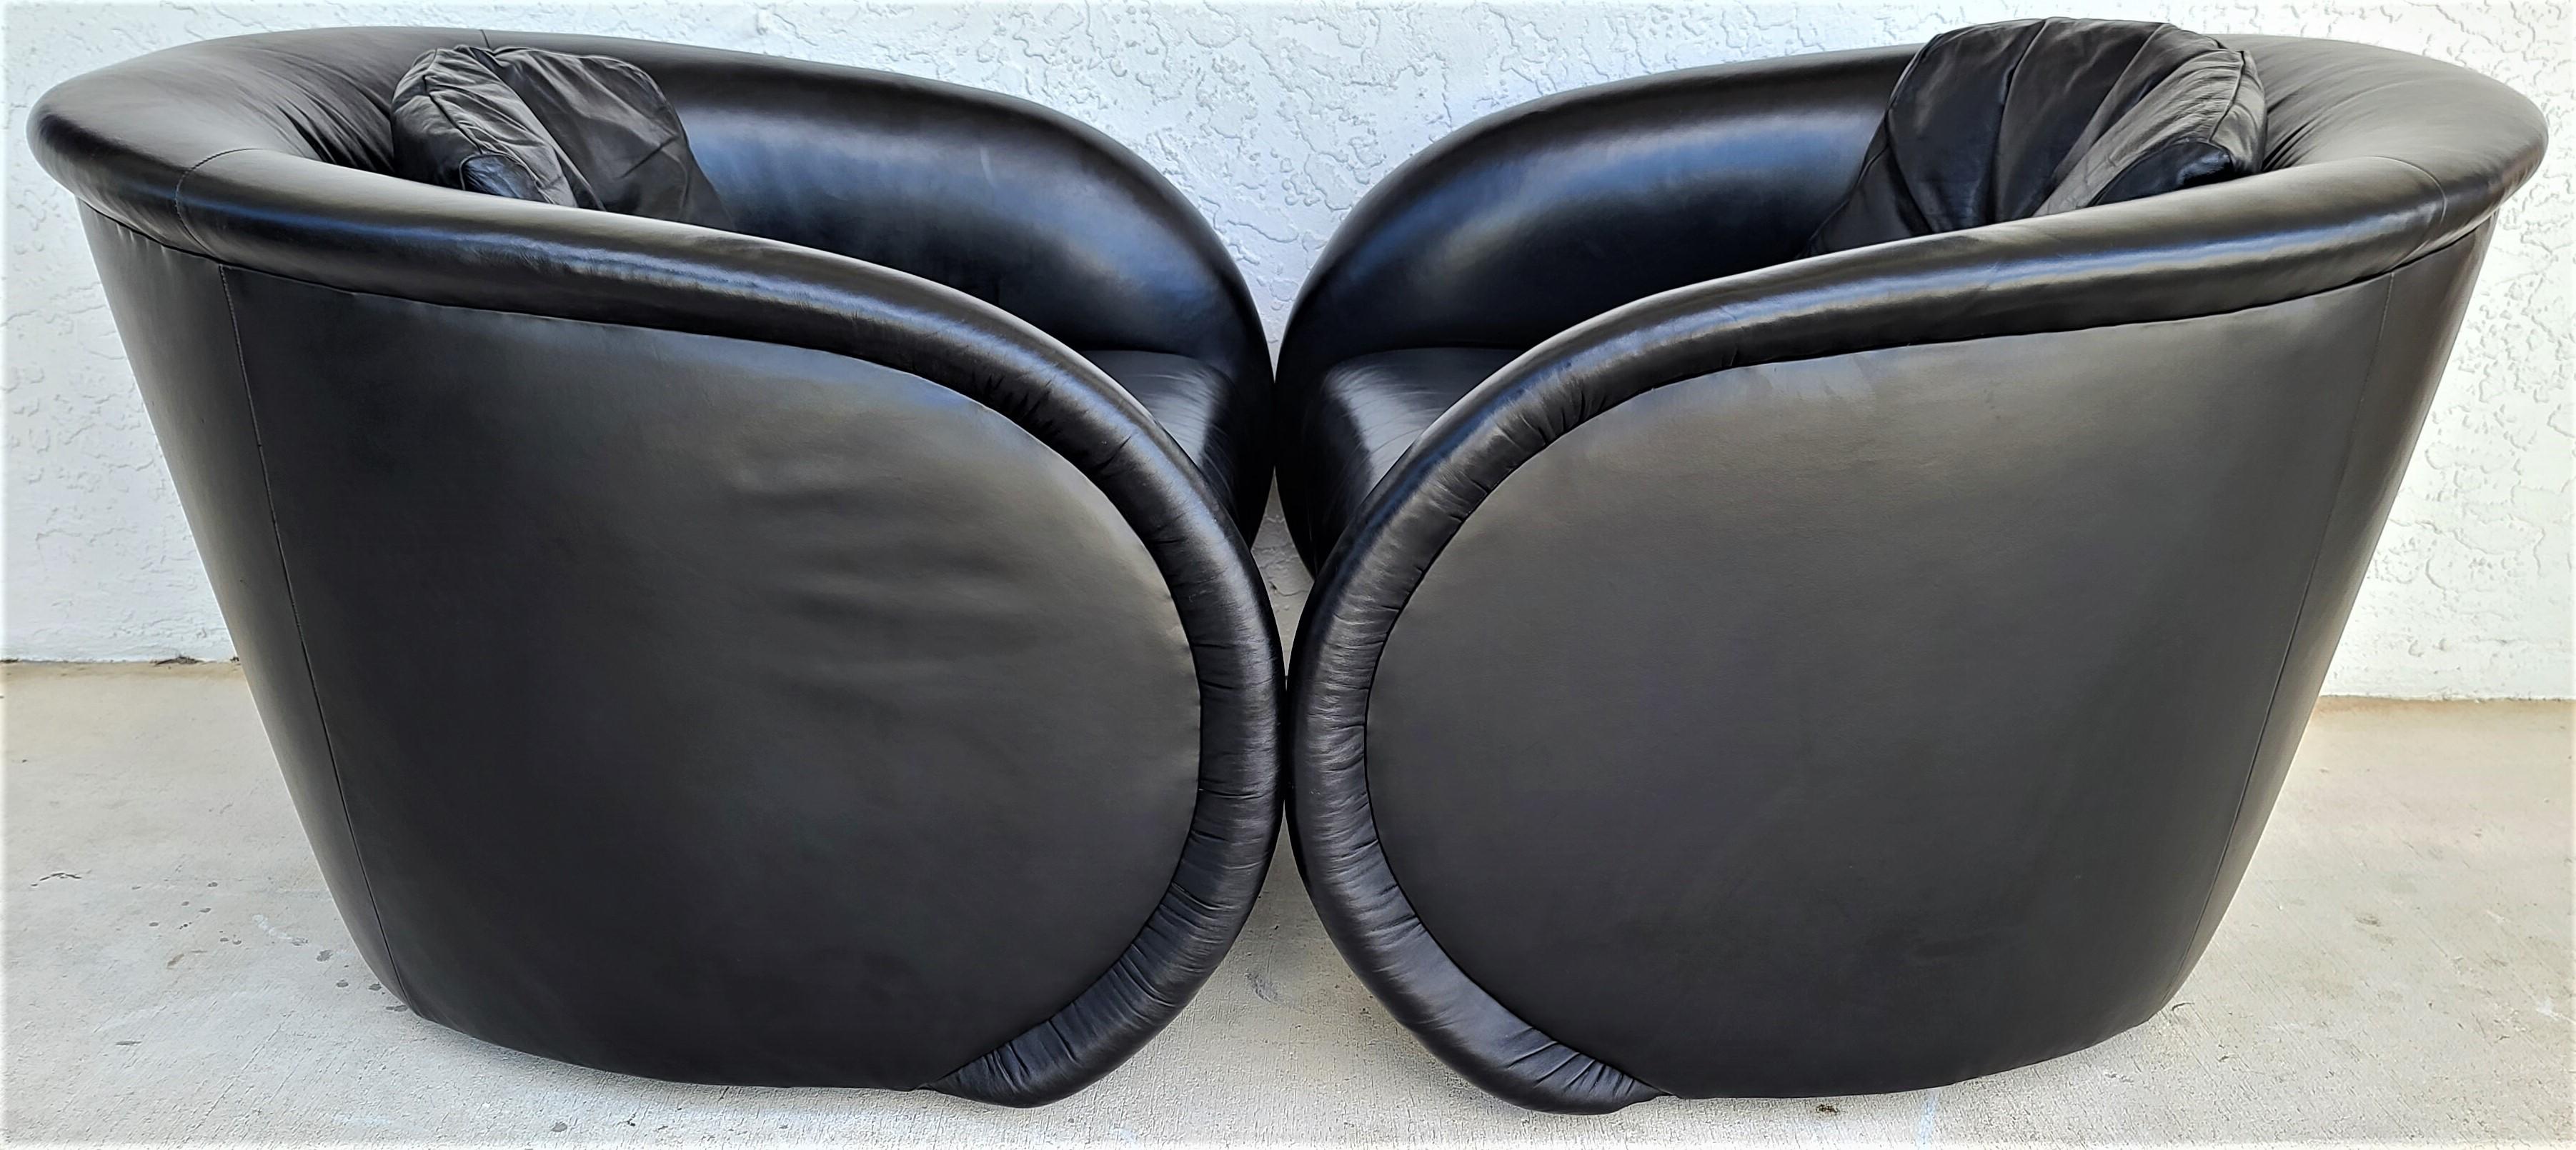 Offrant l'une de nos récentes acquisitions de meubles fins Palm Beach Estate de A
Ensemble de 2 chaises longues Barrel en cuir noir pivotant, de style Mid-Century Modern, par Preview
Des chaises au design spectaculaire dont le style ne se démodera